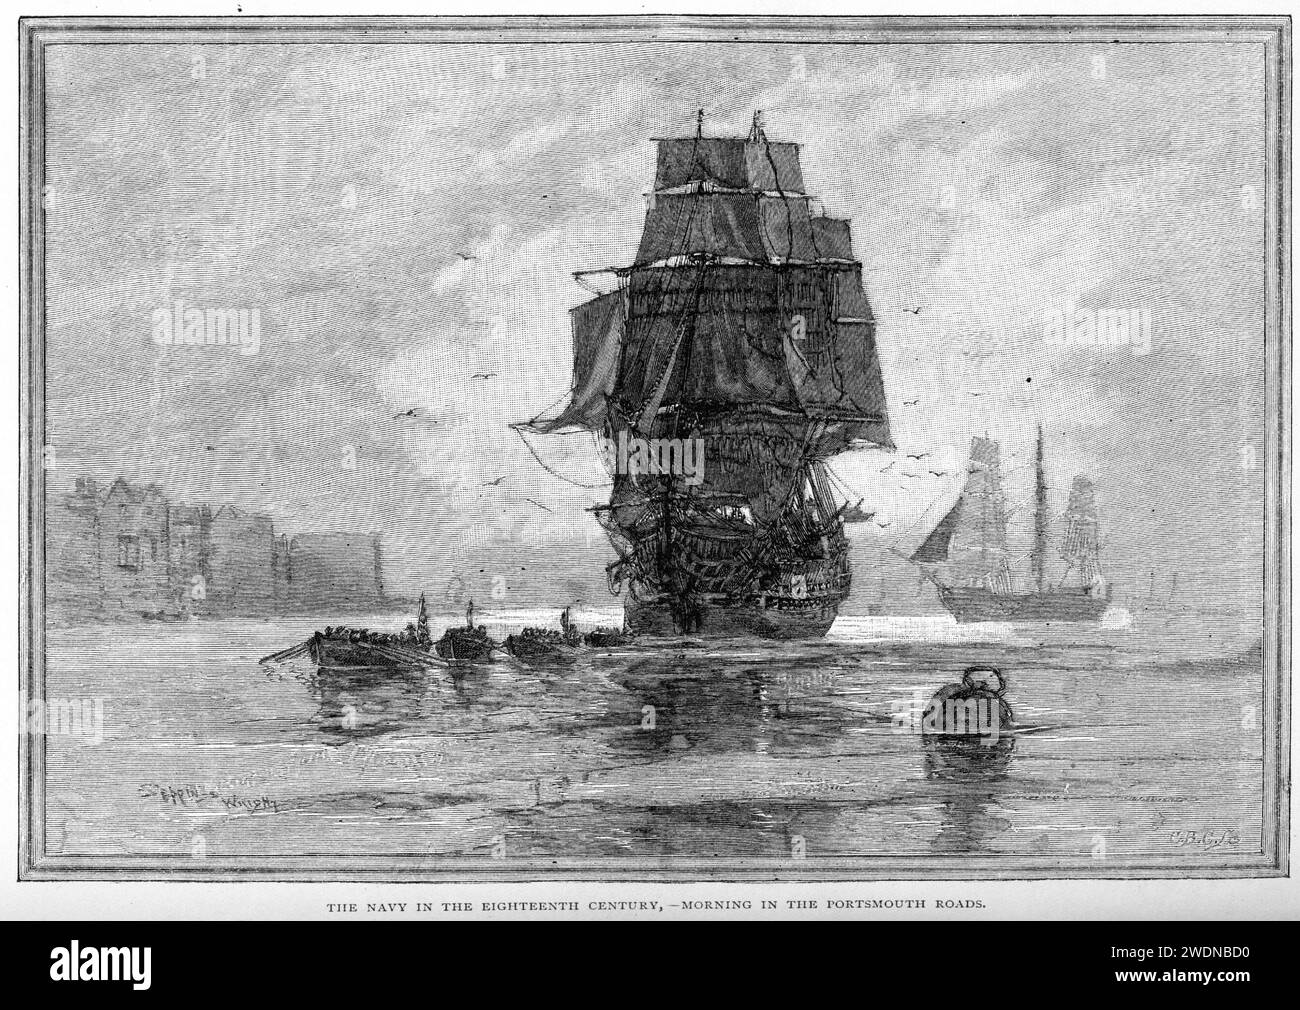 Die Marine Ihrer Majestät im 18. Jahrhundert - Morgen in den Portsmouth Roads Stockfoto